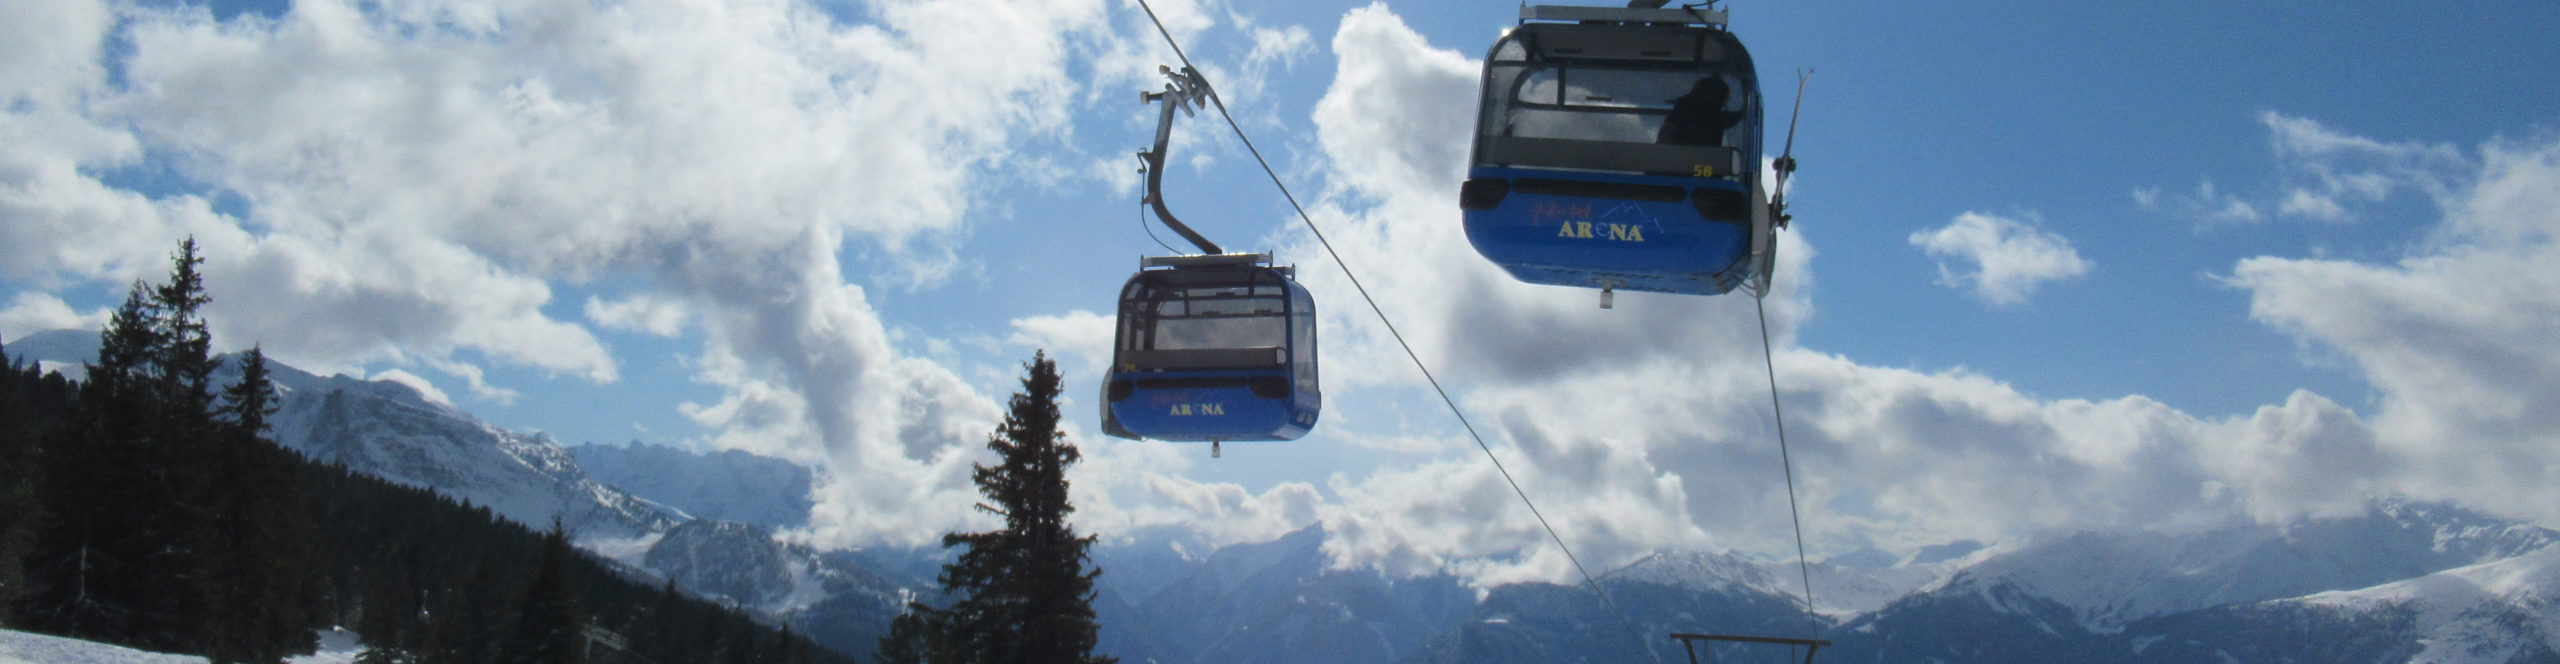 ZILLERTAL – Skiwochenende ab Freitag Nachmittag – Hotel in Strass 